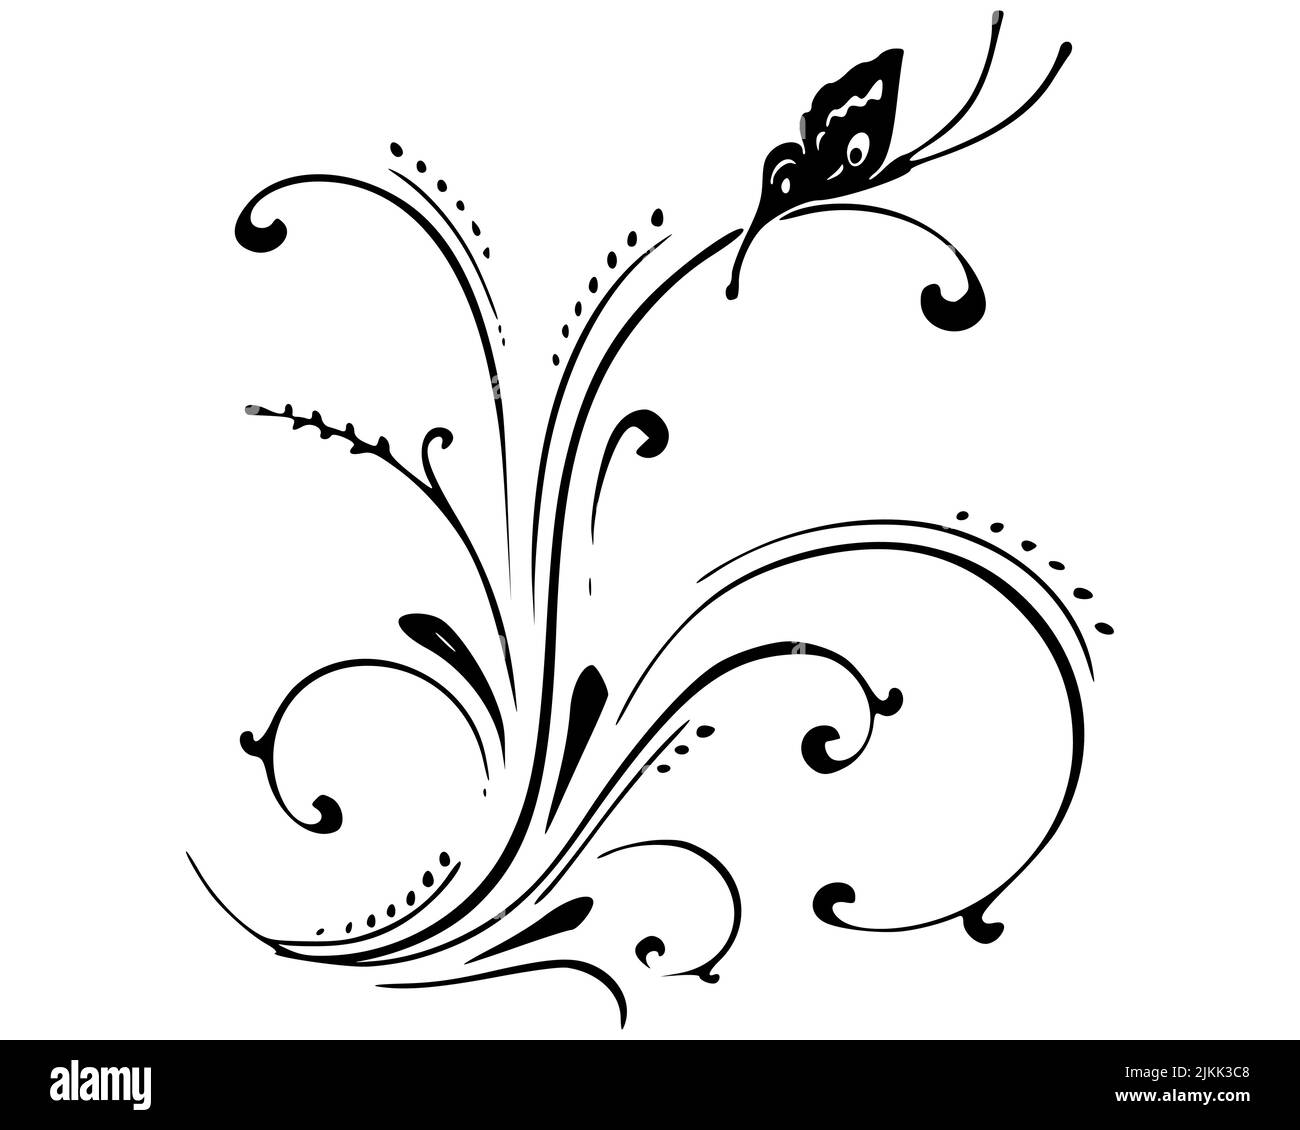 Motif papillons de silhouette noire avec quelques tourbillons et boucles Illustration de Vecteur